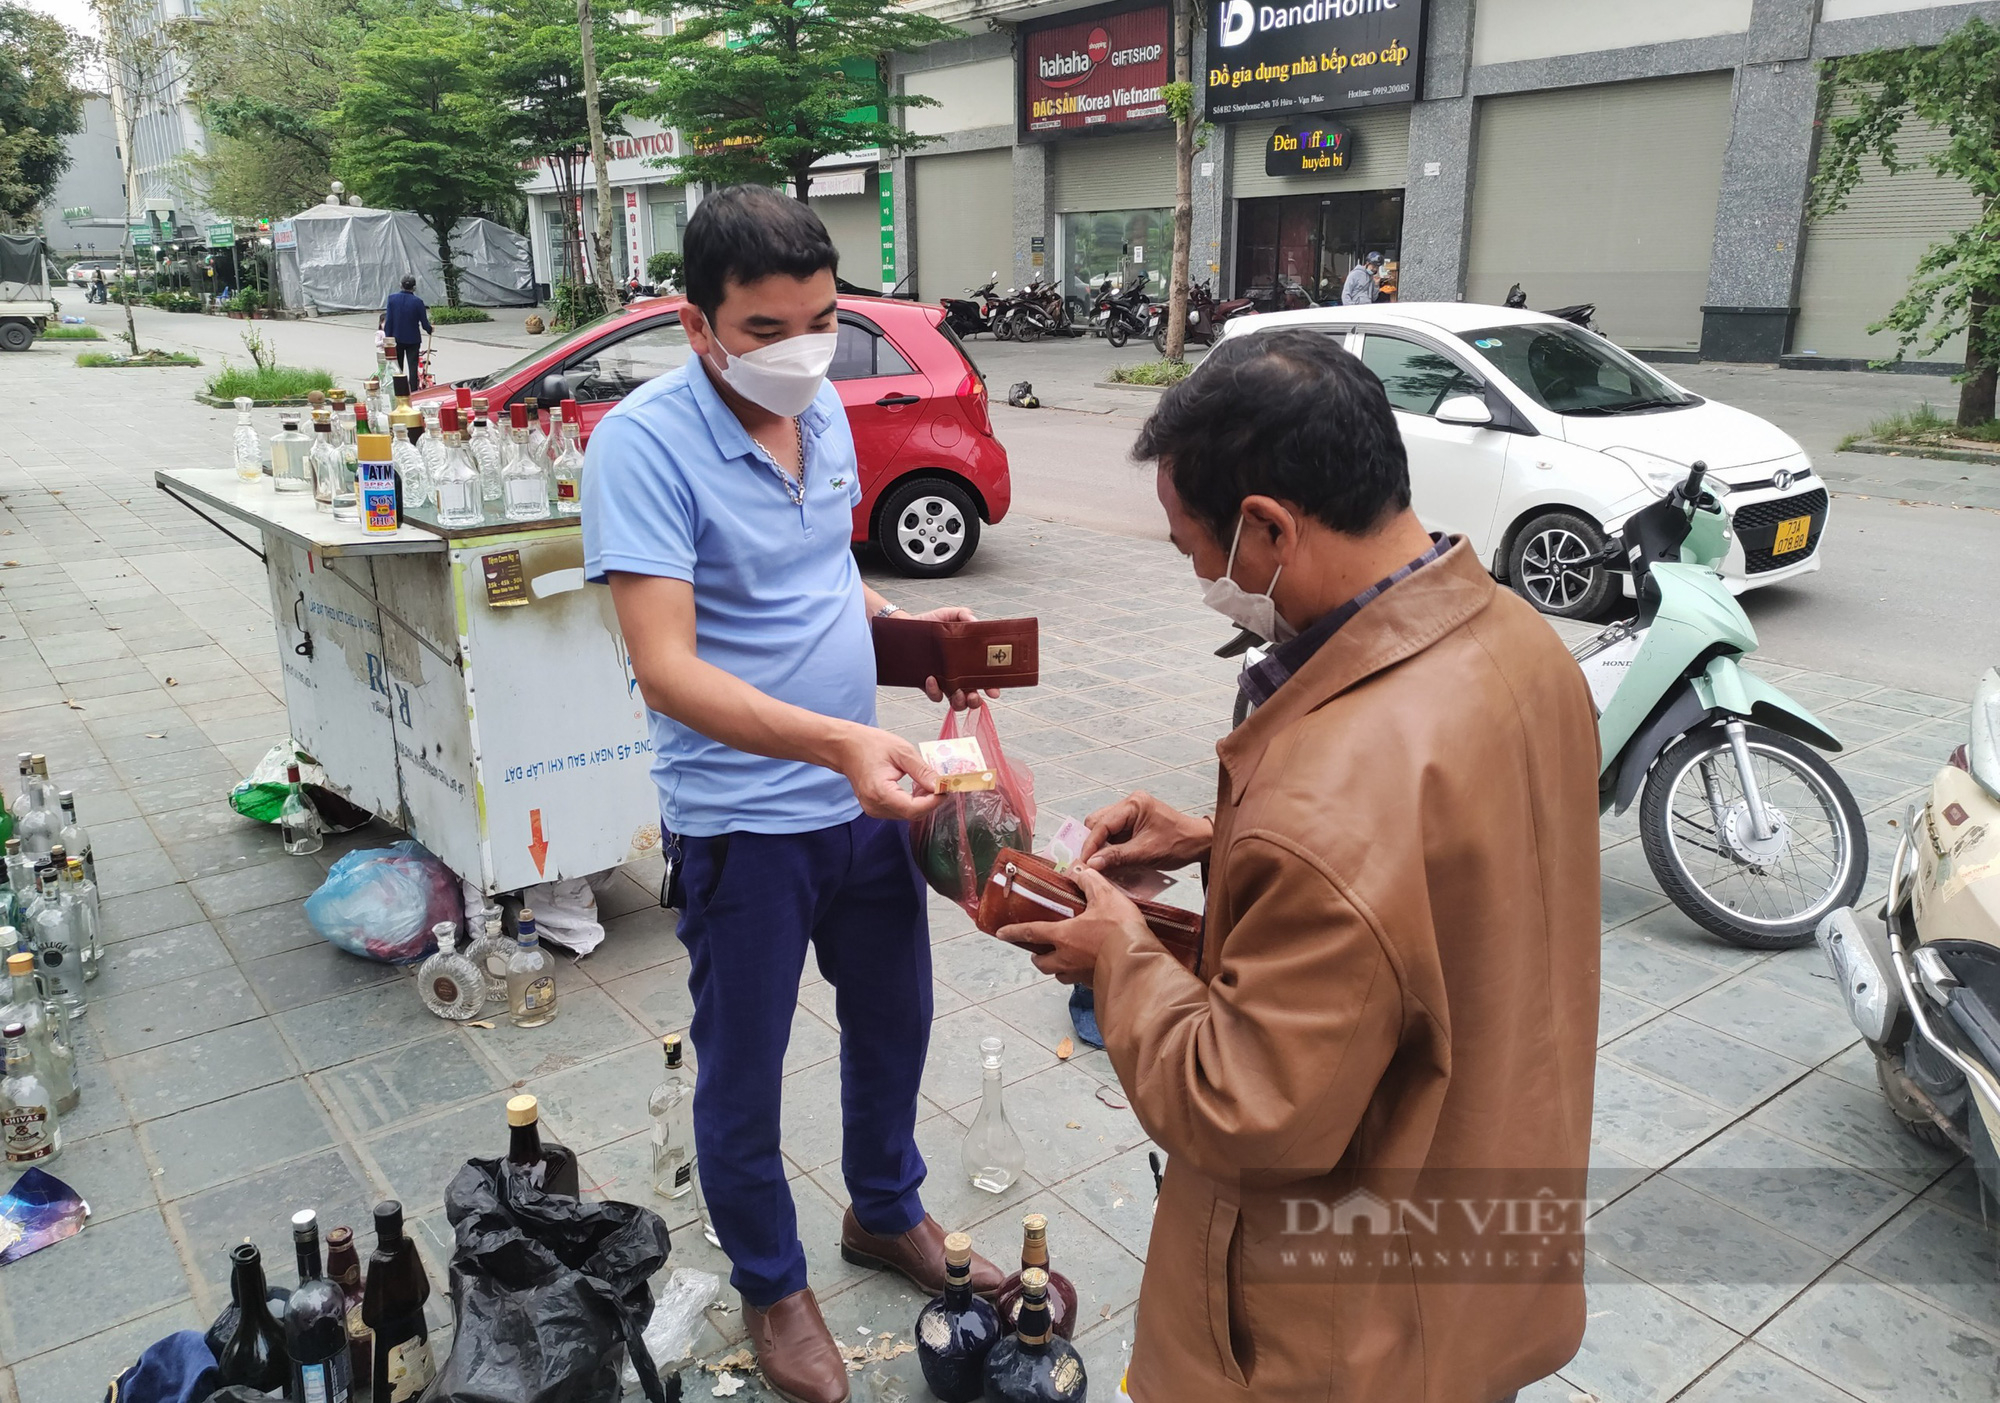 Nghề lạ ở Hà Nội: Ngồi vỉa hè bán vỏ rượu tây kiếm vài trăm nghìn một ngày - Ảnh 2.